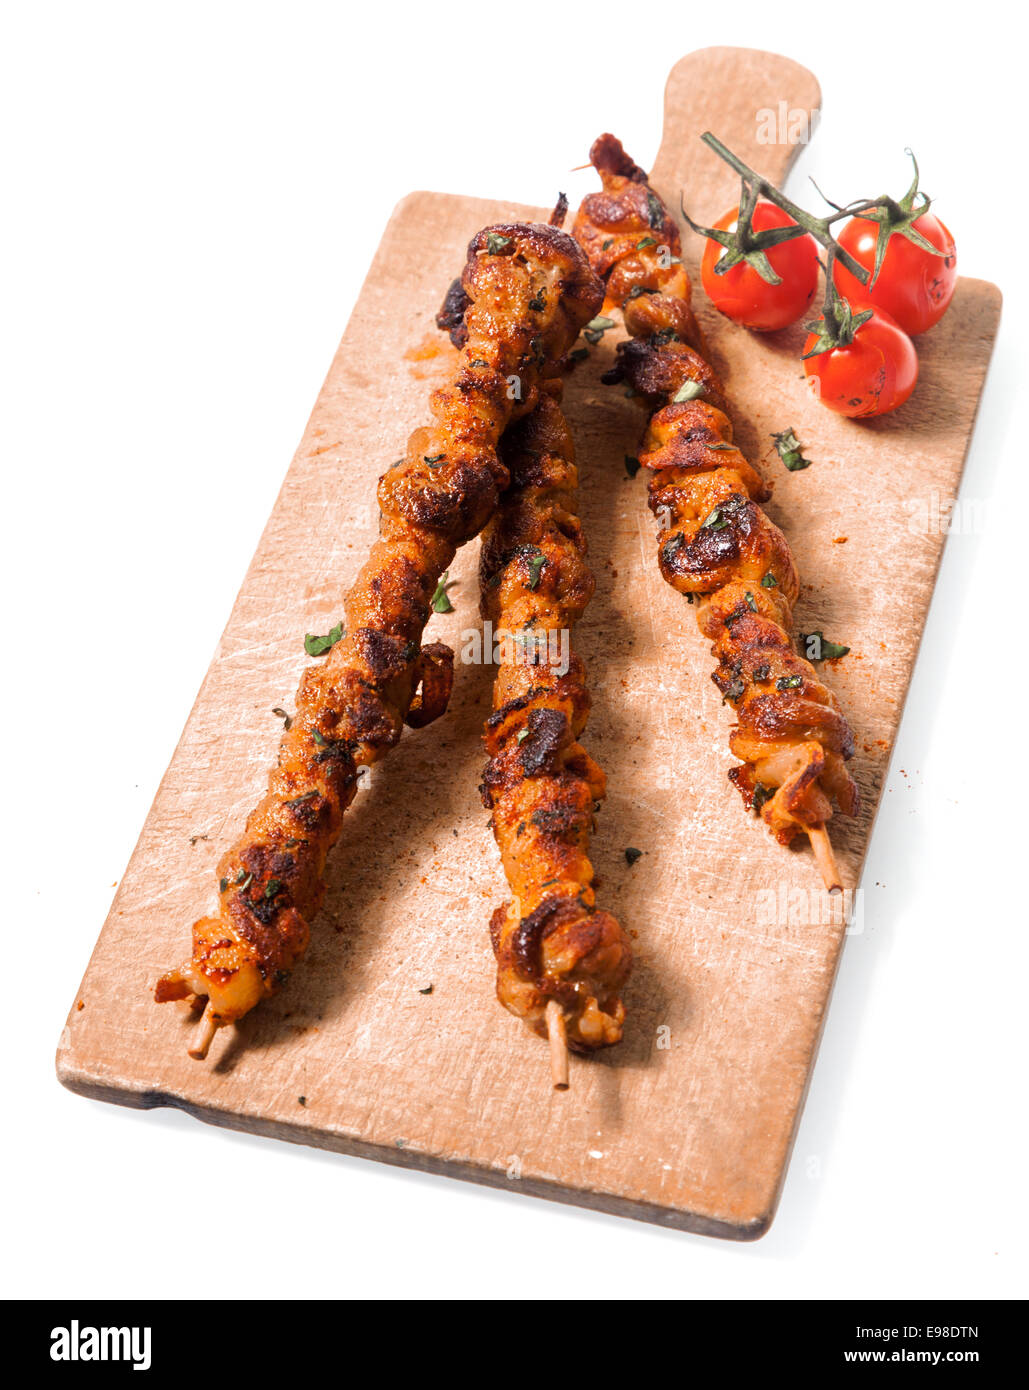 Trio di nutriente piccante di carne alla brace spiedini servita su una vecchia tavola di legno con arrosti di pomodori ciliegini, isolato su bianco Foto Stock